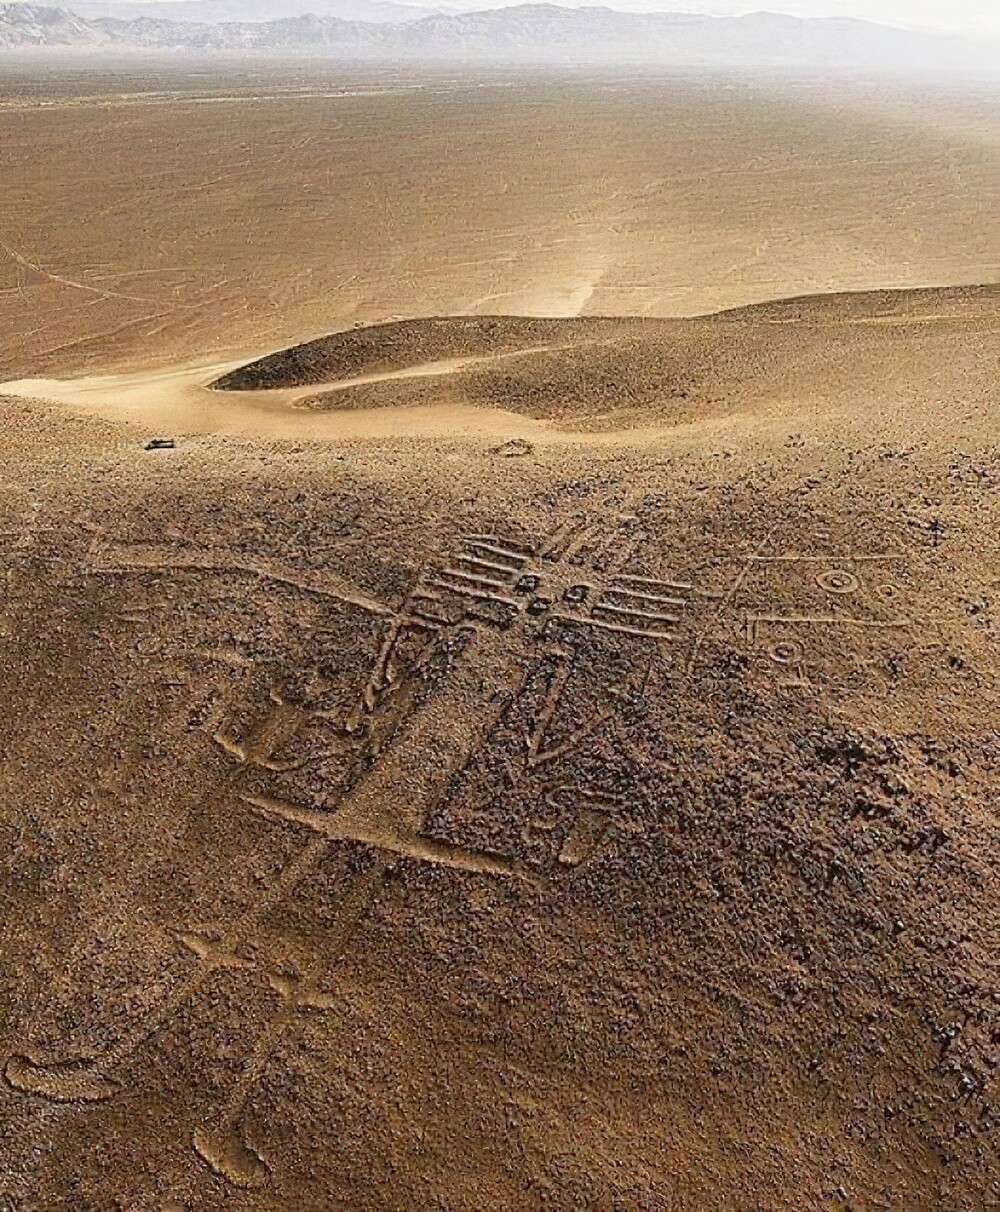 12. Гигант Атакама, расположенный в пустыне Атакама в Чили. Это массивный геоглиф, изображающий антропоморфную фигуру